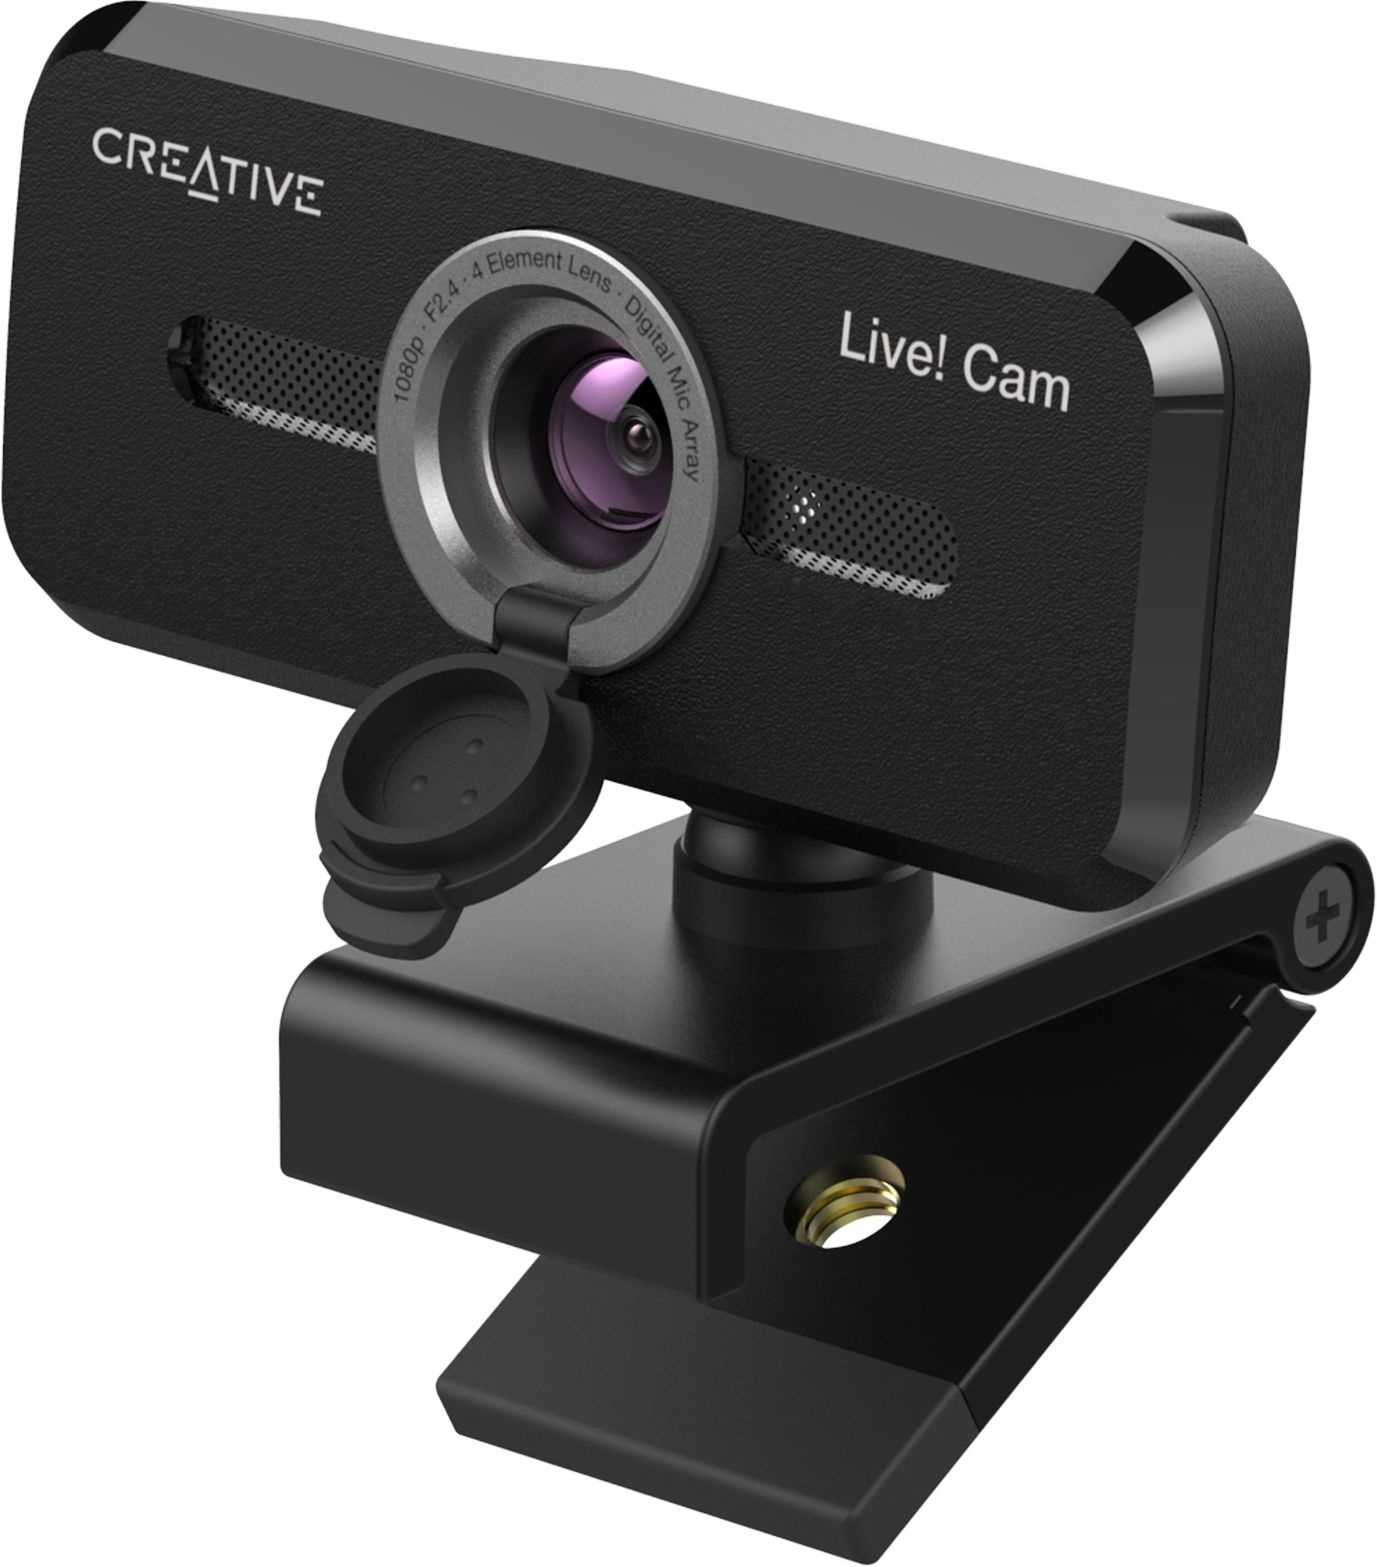 Web- Creative Live! Cam SYNC 1080P V2,   [73vf088000000]